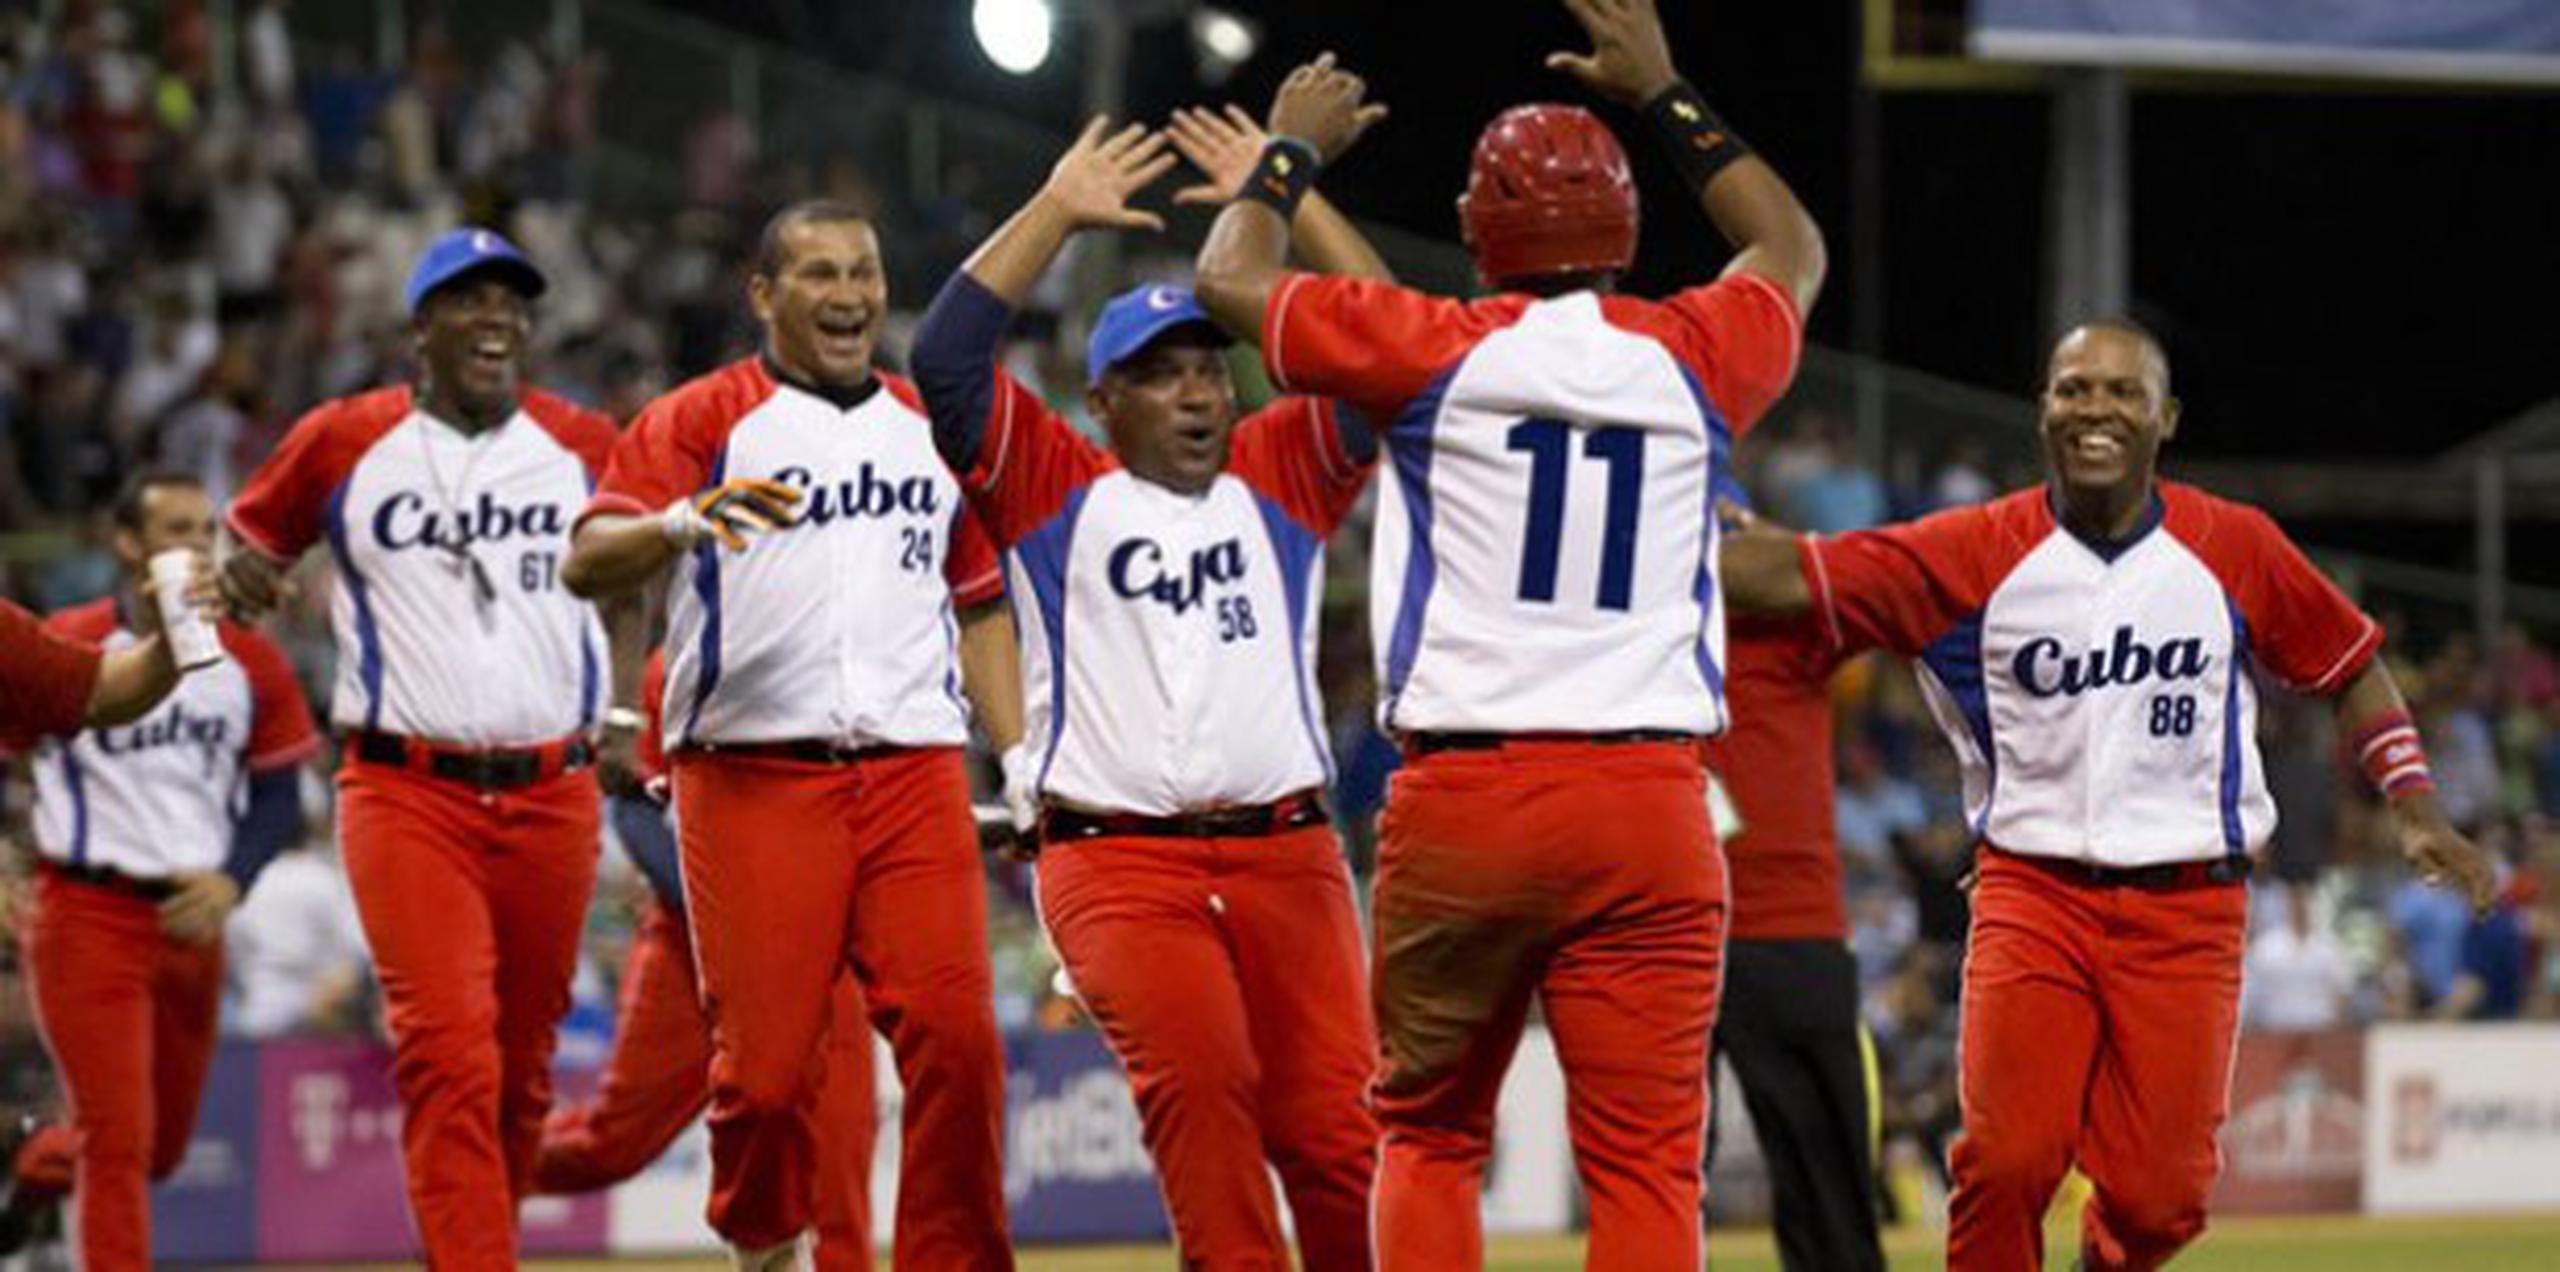 Los directivos de la Federación de Béisbol de Cuba se reunieron con el resto de la delegación y señalaron que grupos organizados se dedicaron a alentar la deserción de los peloteros.(tonito.zayas@gfrmedia.com)